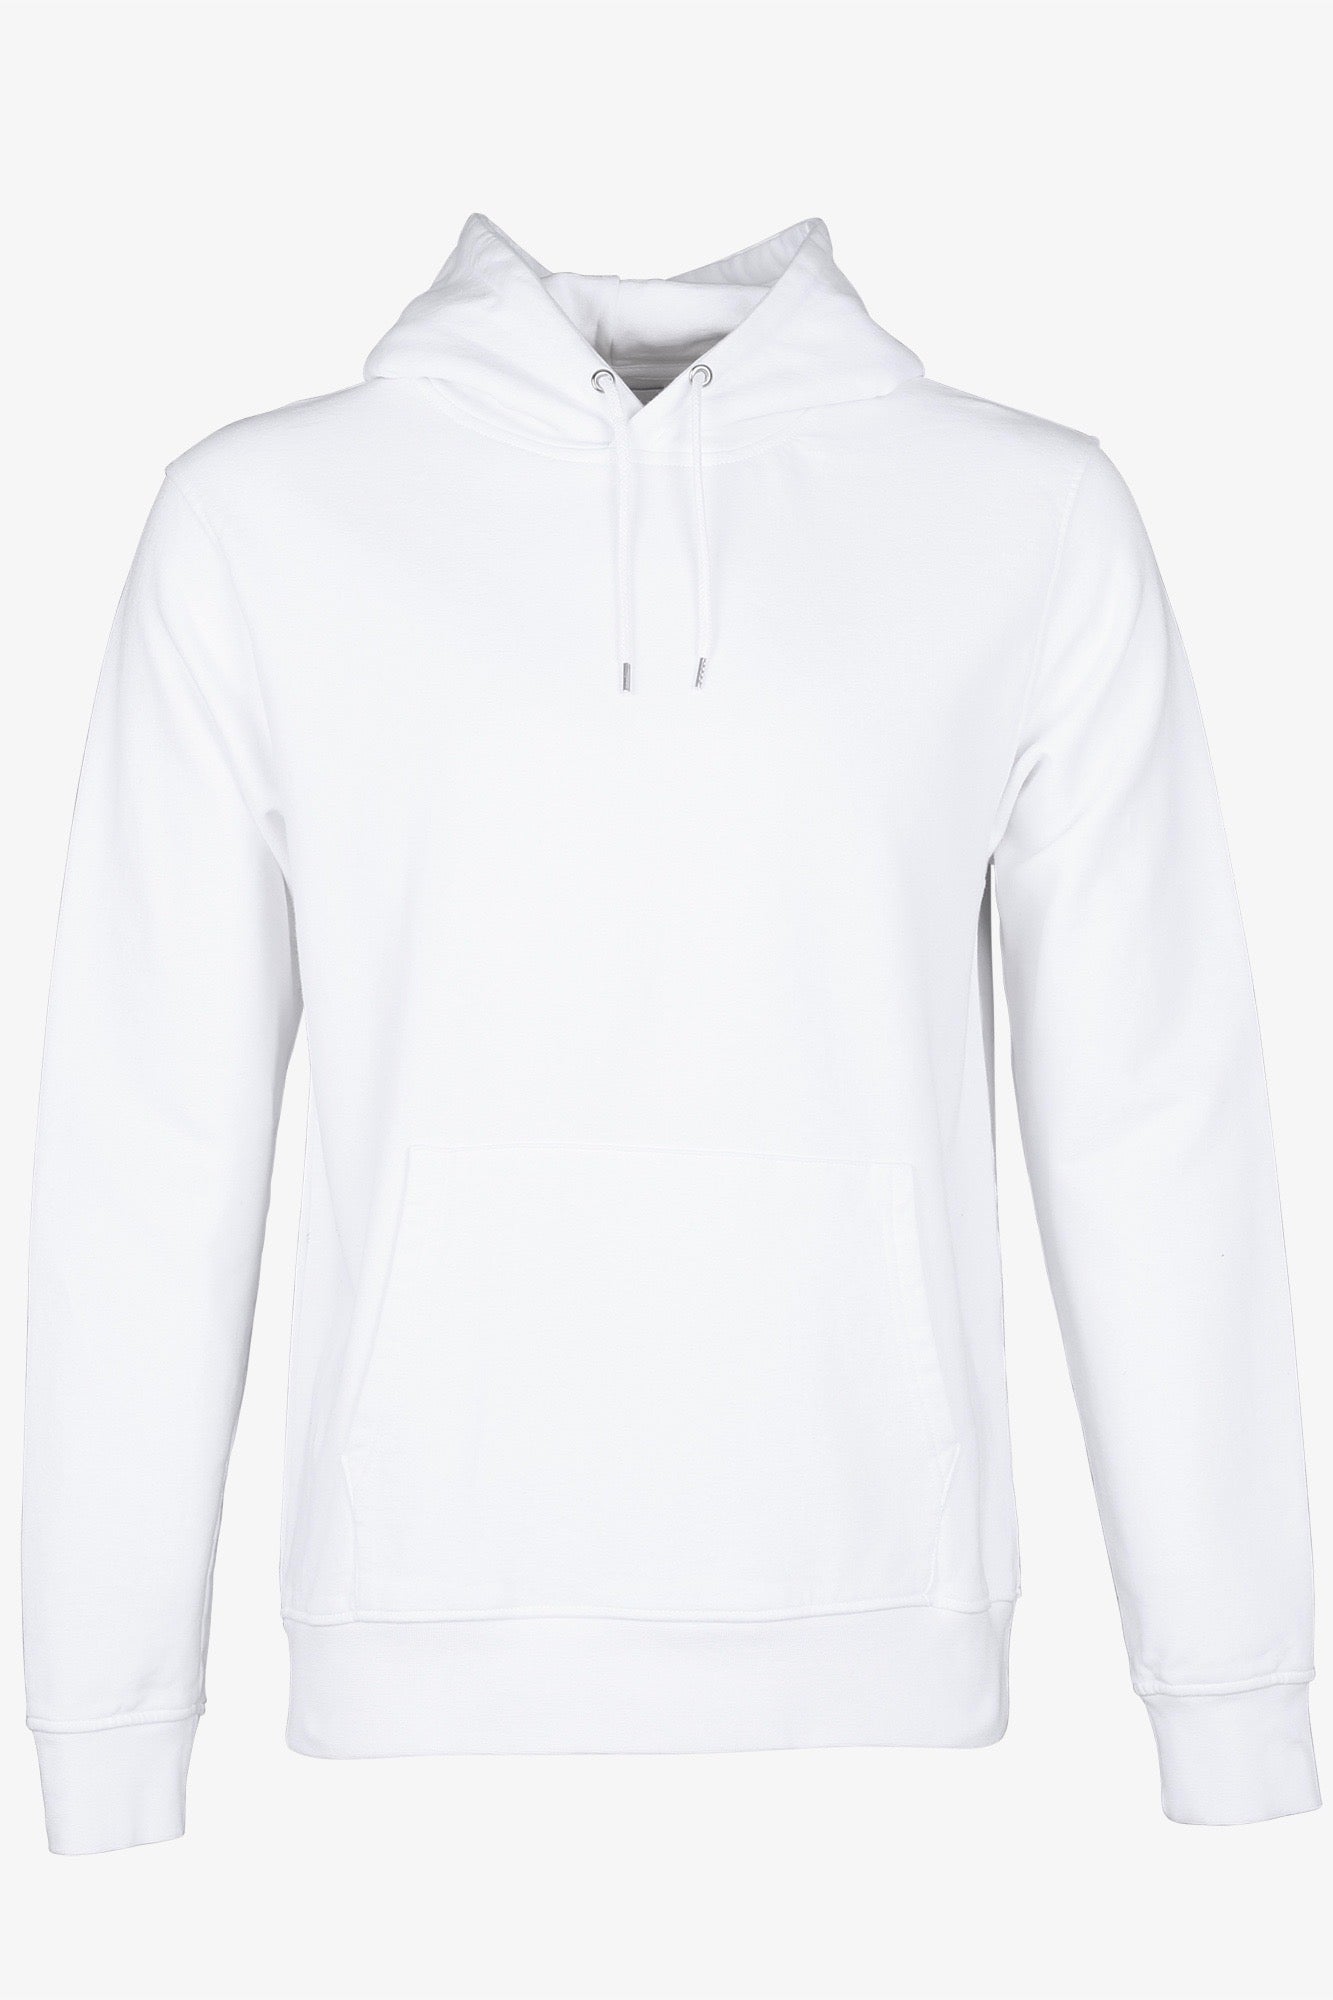 Klassischer Hoodie aus Biobaumwolle in strahlendem Weiß. Von Colorful Standard CS1006 optical white